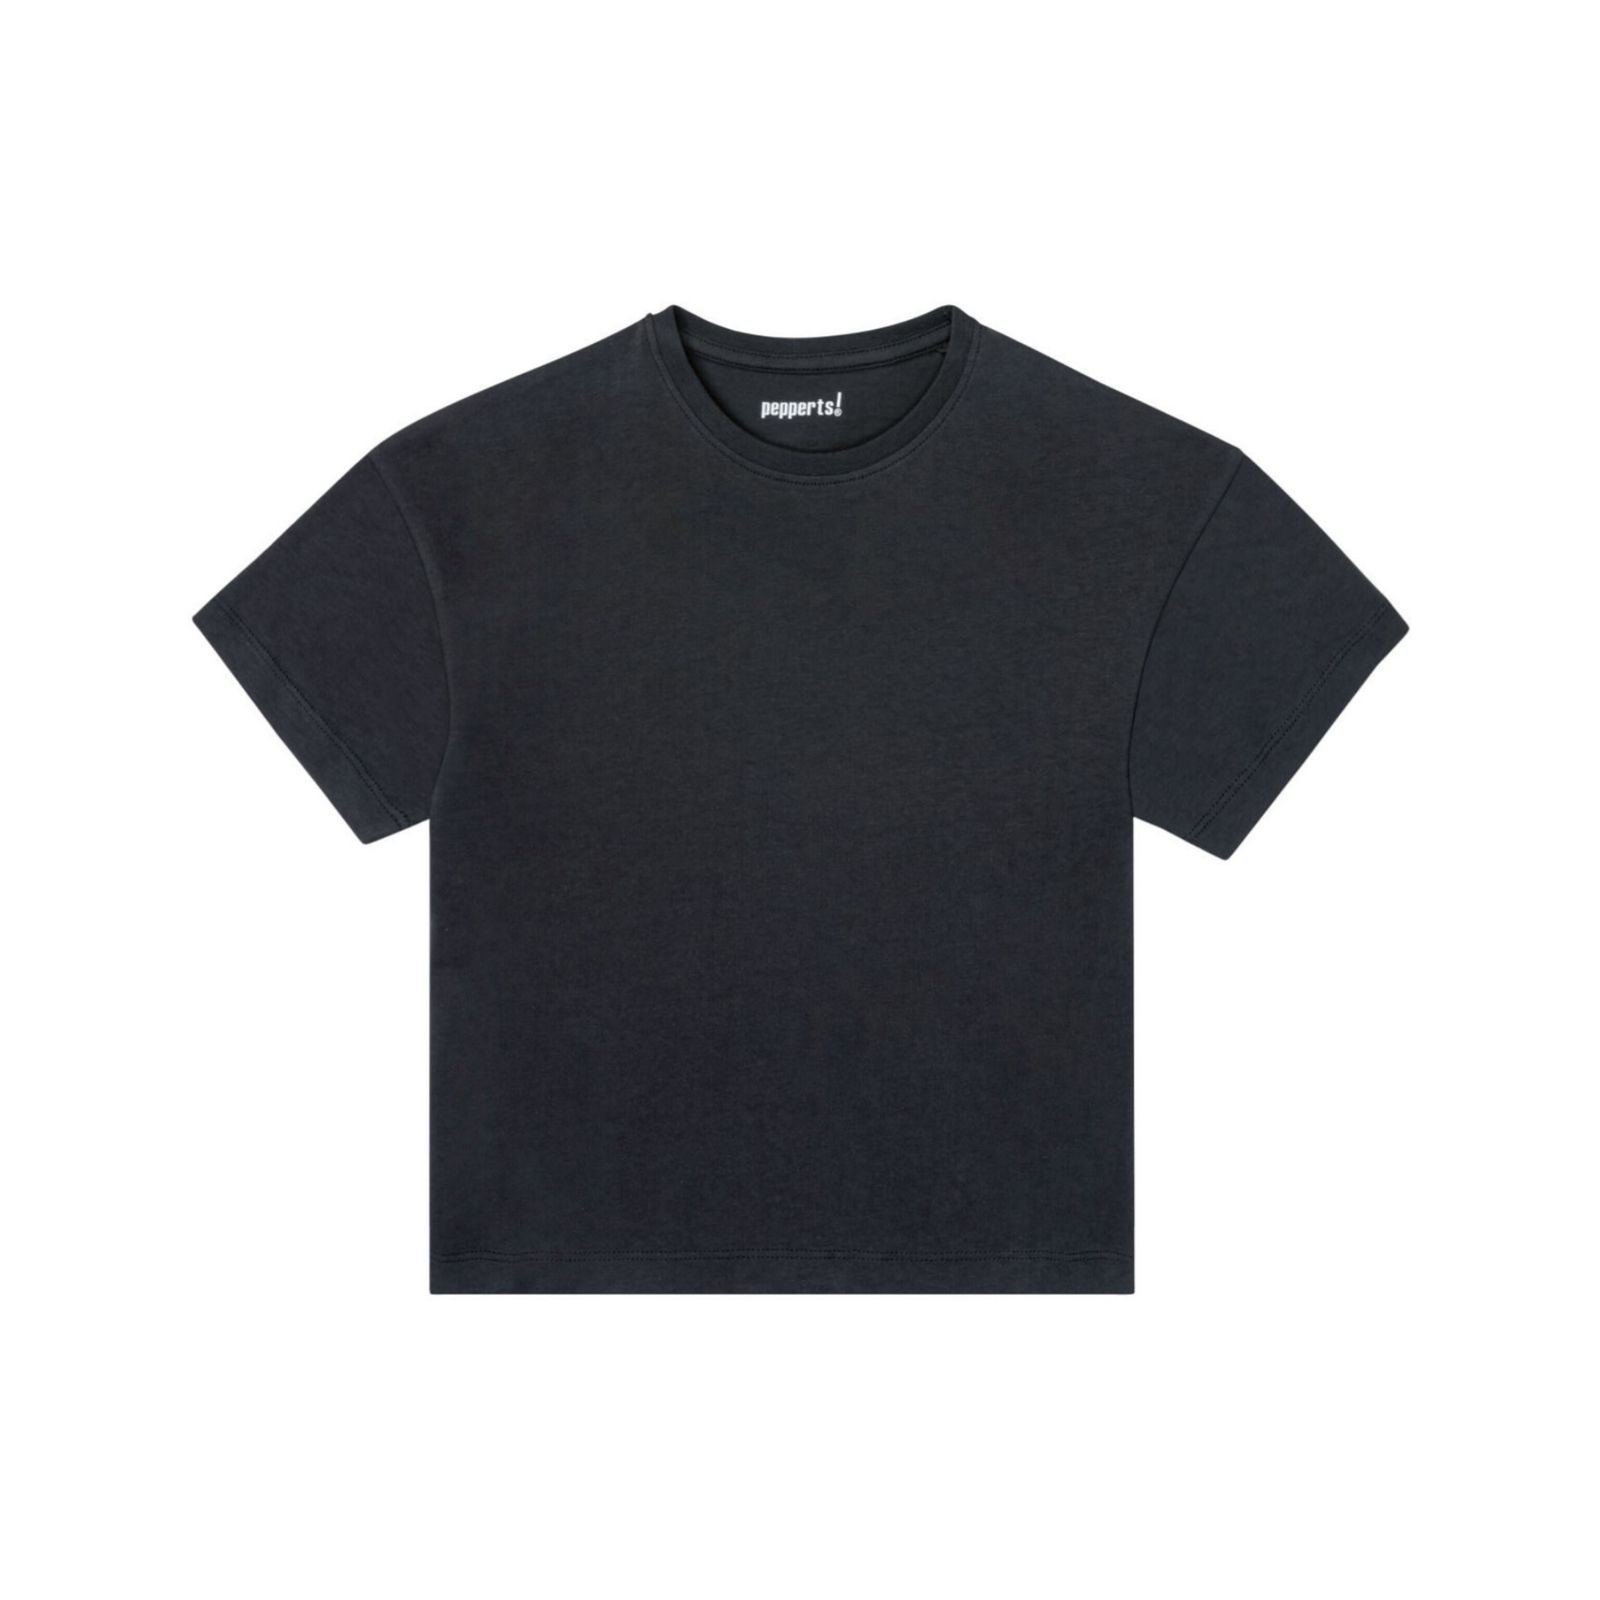 تی شرت آستین کوتاه دخترانه پیپرتس مدل ger578 مجموعه 3 عددی -  - 3